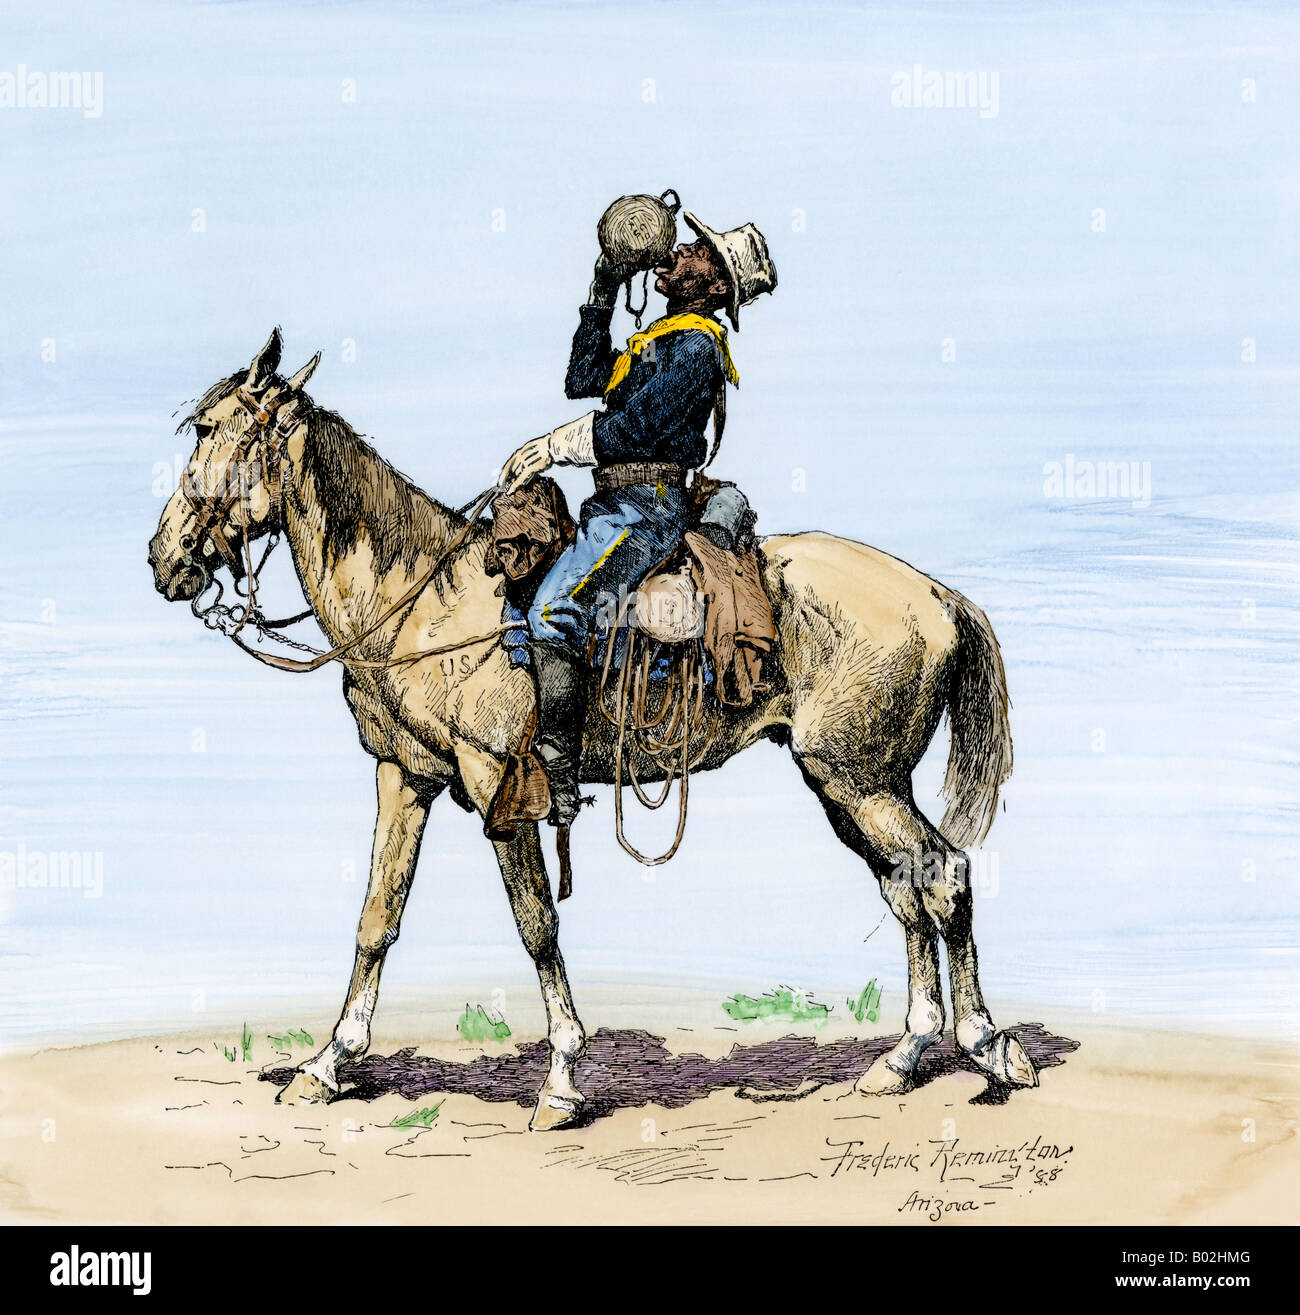 Buffalo Soldier boire à sa gourde sur un désert de mars. À la main, gravure sur bois, d'une illustration Frederic Remington Banque D'Images